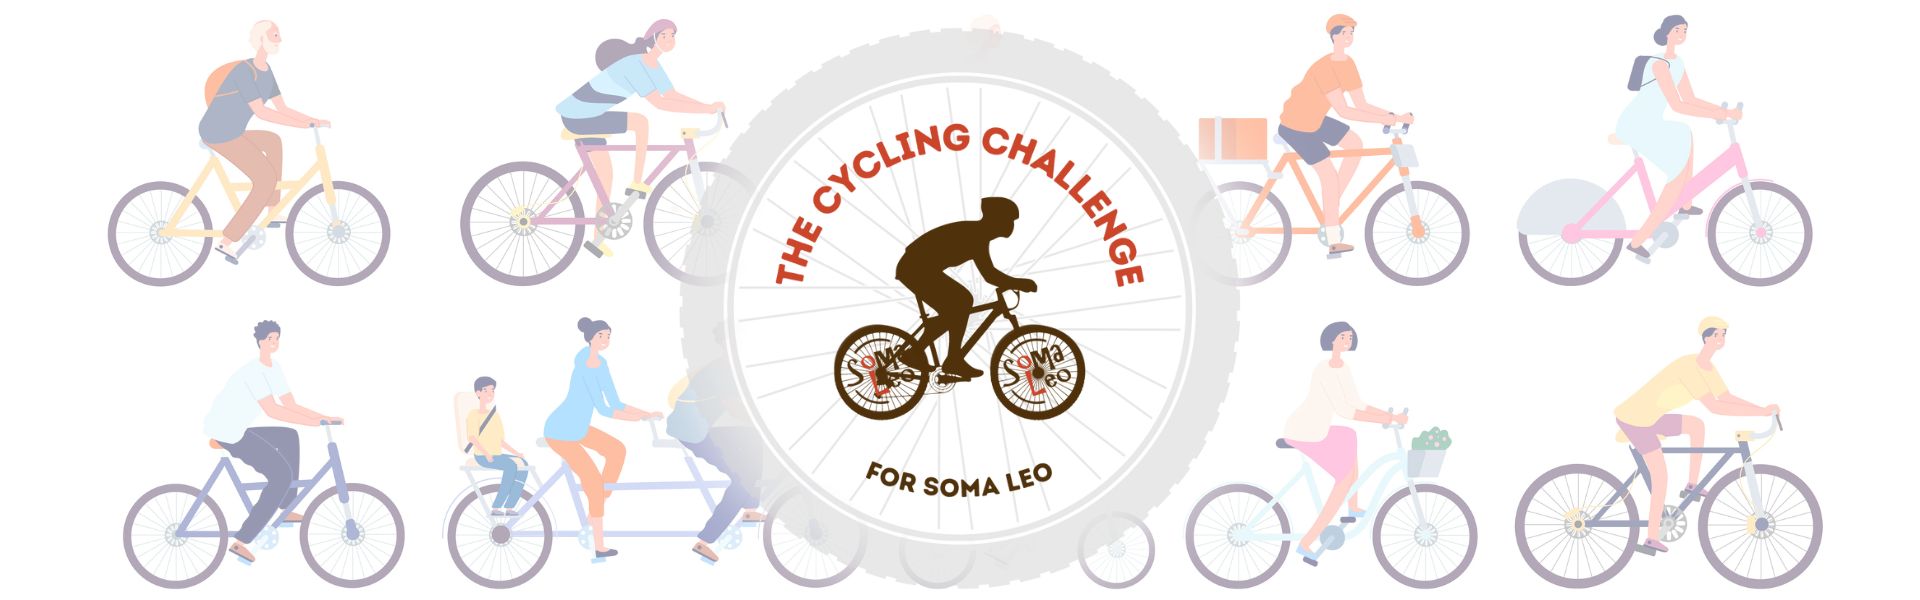 Pound Gates teams aim to raise £5,000 through Cycling Challenge